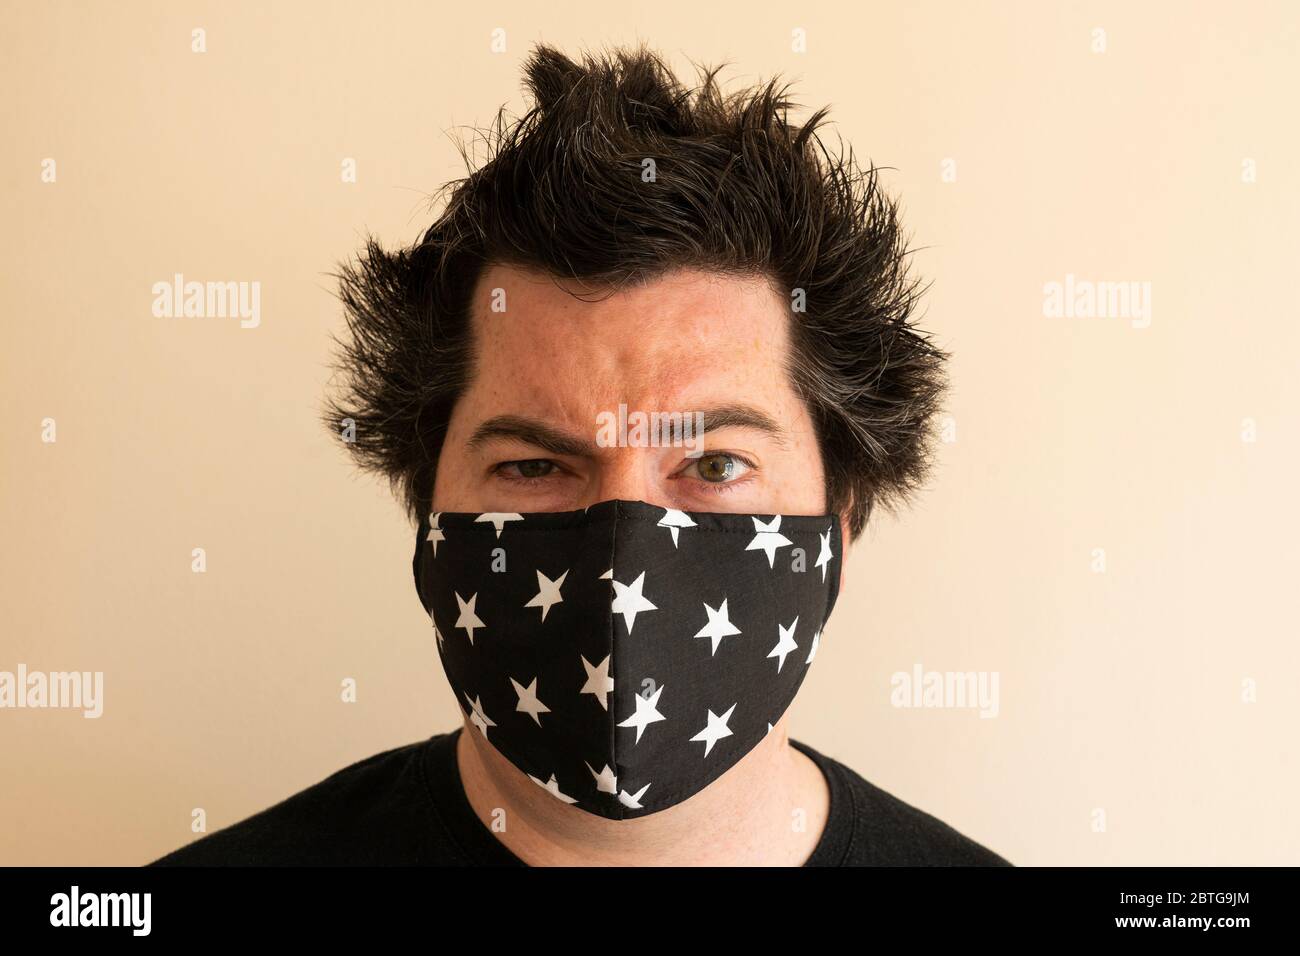 Ein Mann in seinen späten dreißiger Jahren trägt wiederverwendbare Gesichtsmaske und schaut direkt auf den Betrachter während der Coronavirus-Pandemie Covid 19 mit wildem, absperrbarem Haar Stockfoto